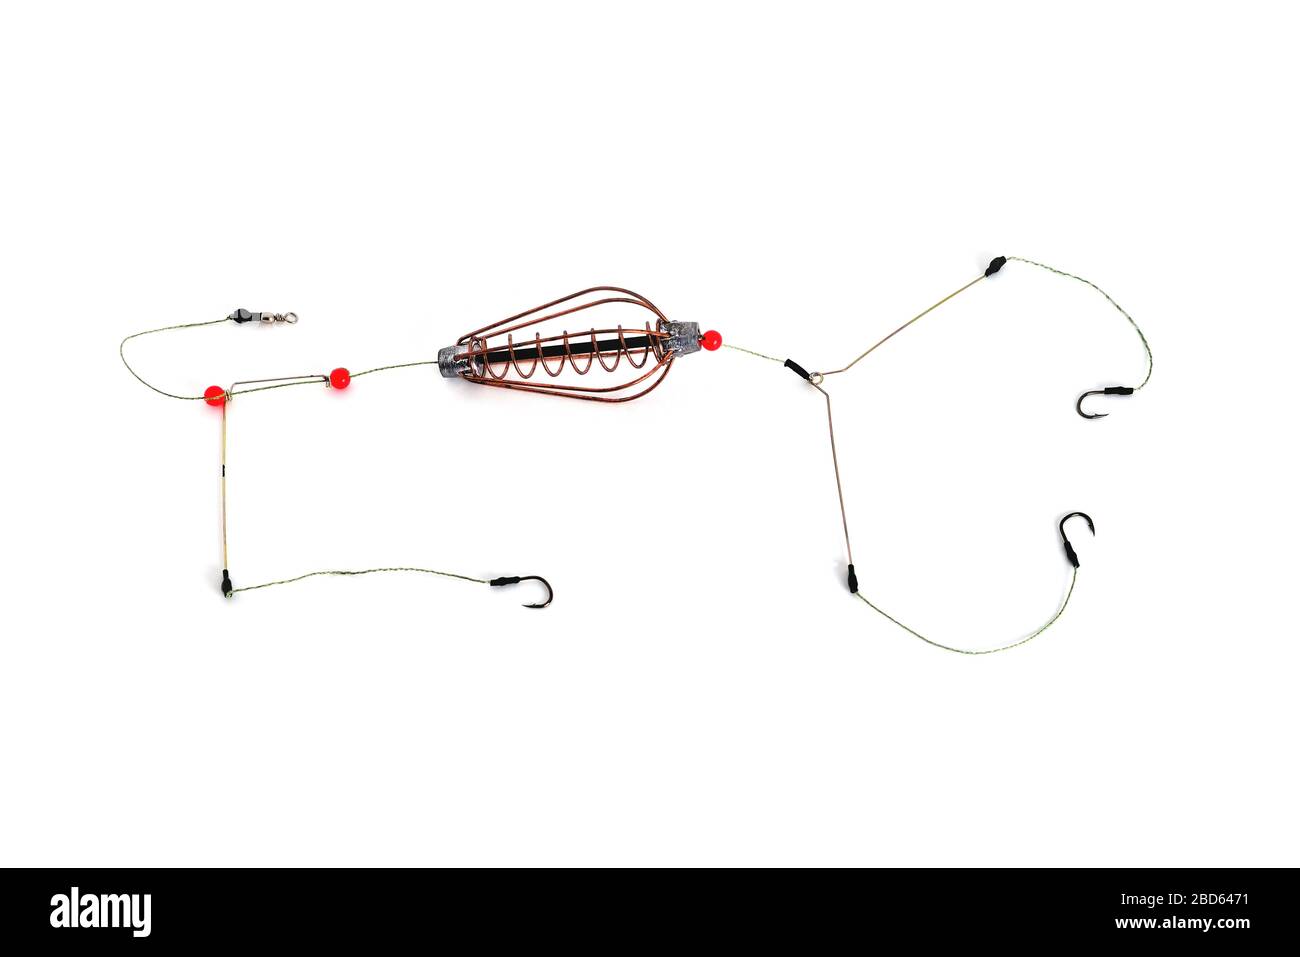 canaleta de pesca, anzuelos y línea de pesca, accesorios para la pesca de  fondo en un primer plano de fondo blanco Fotografía de stock - Alamy